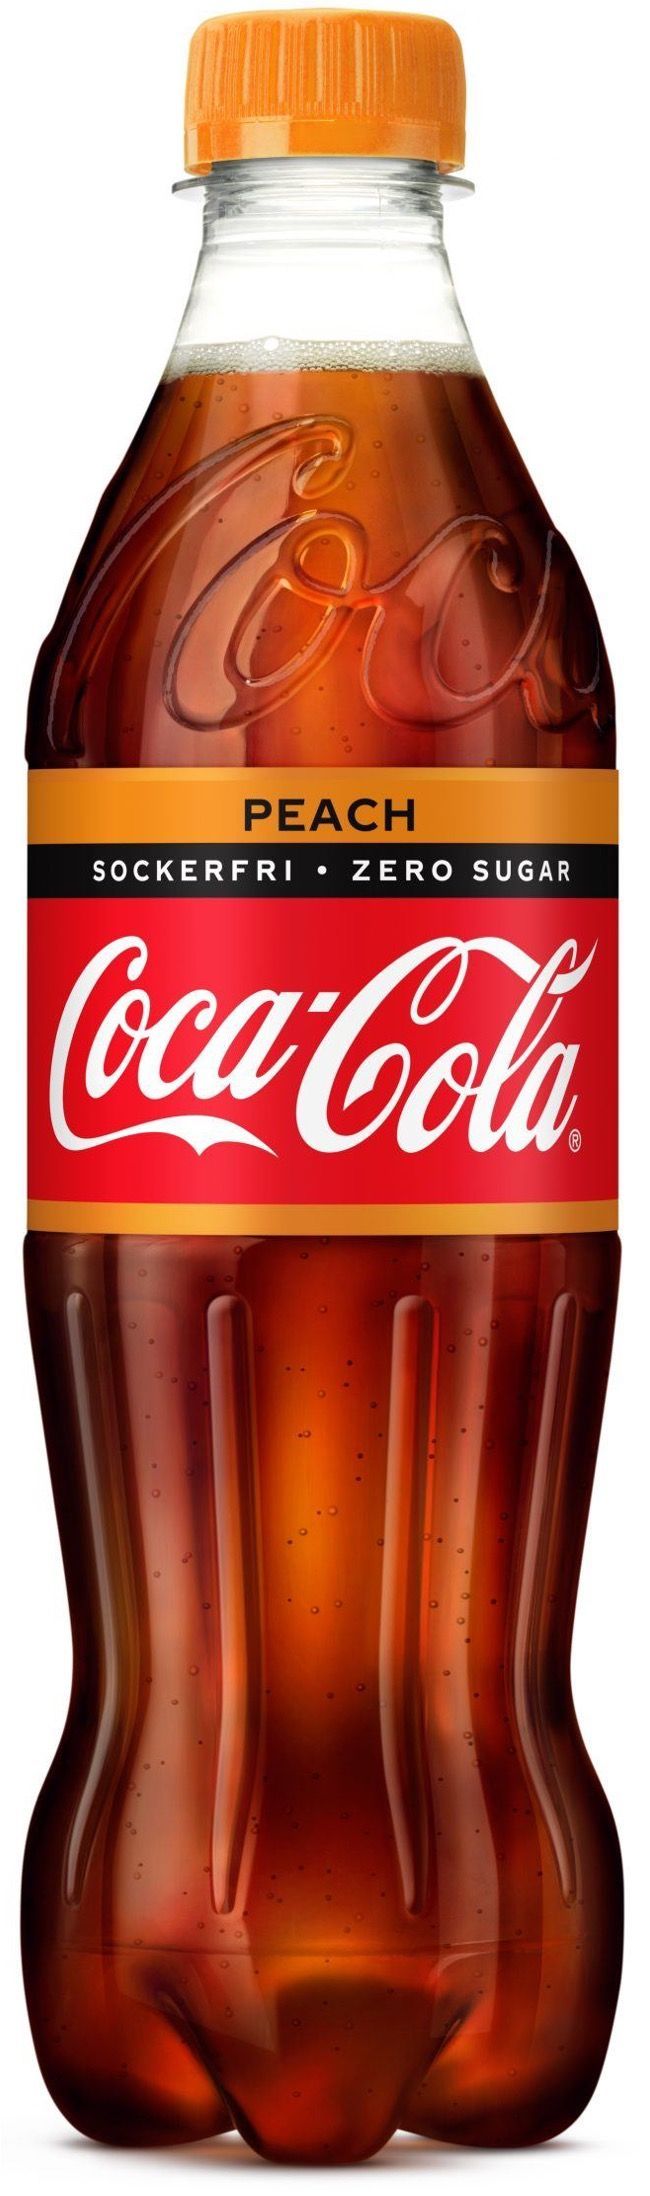 coca-cola-zero-sugar-peach-plastic-bottle-50cl_cola-zero.com